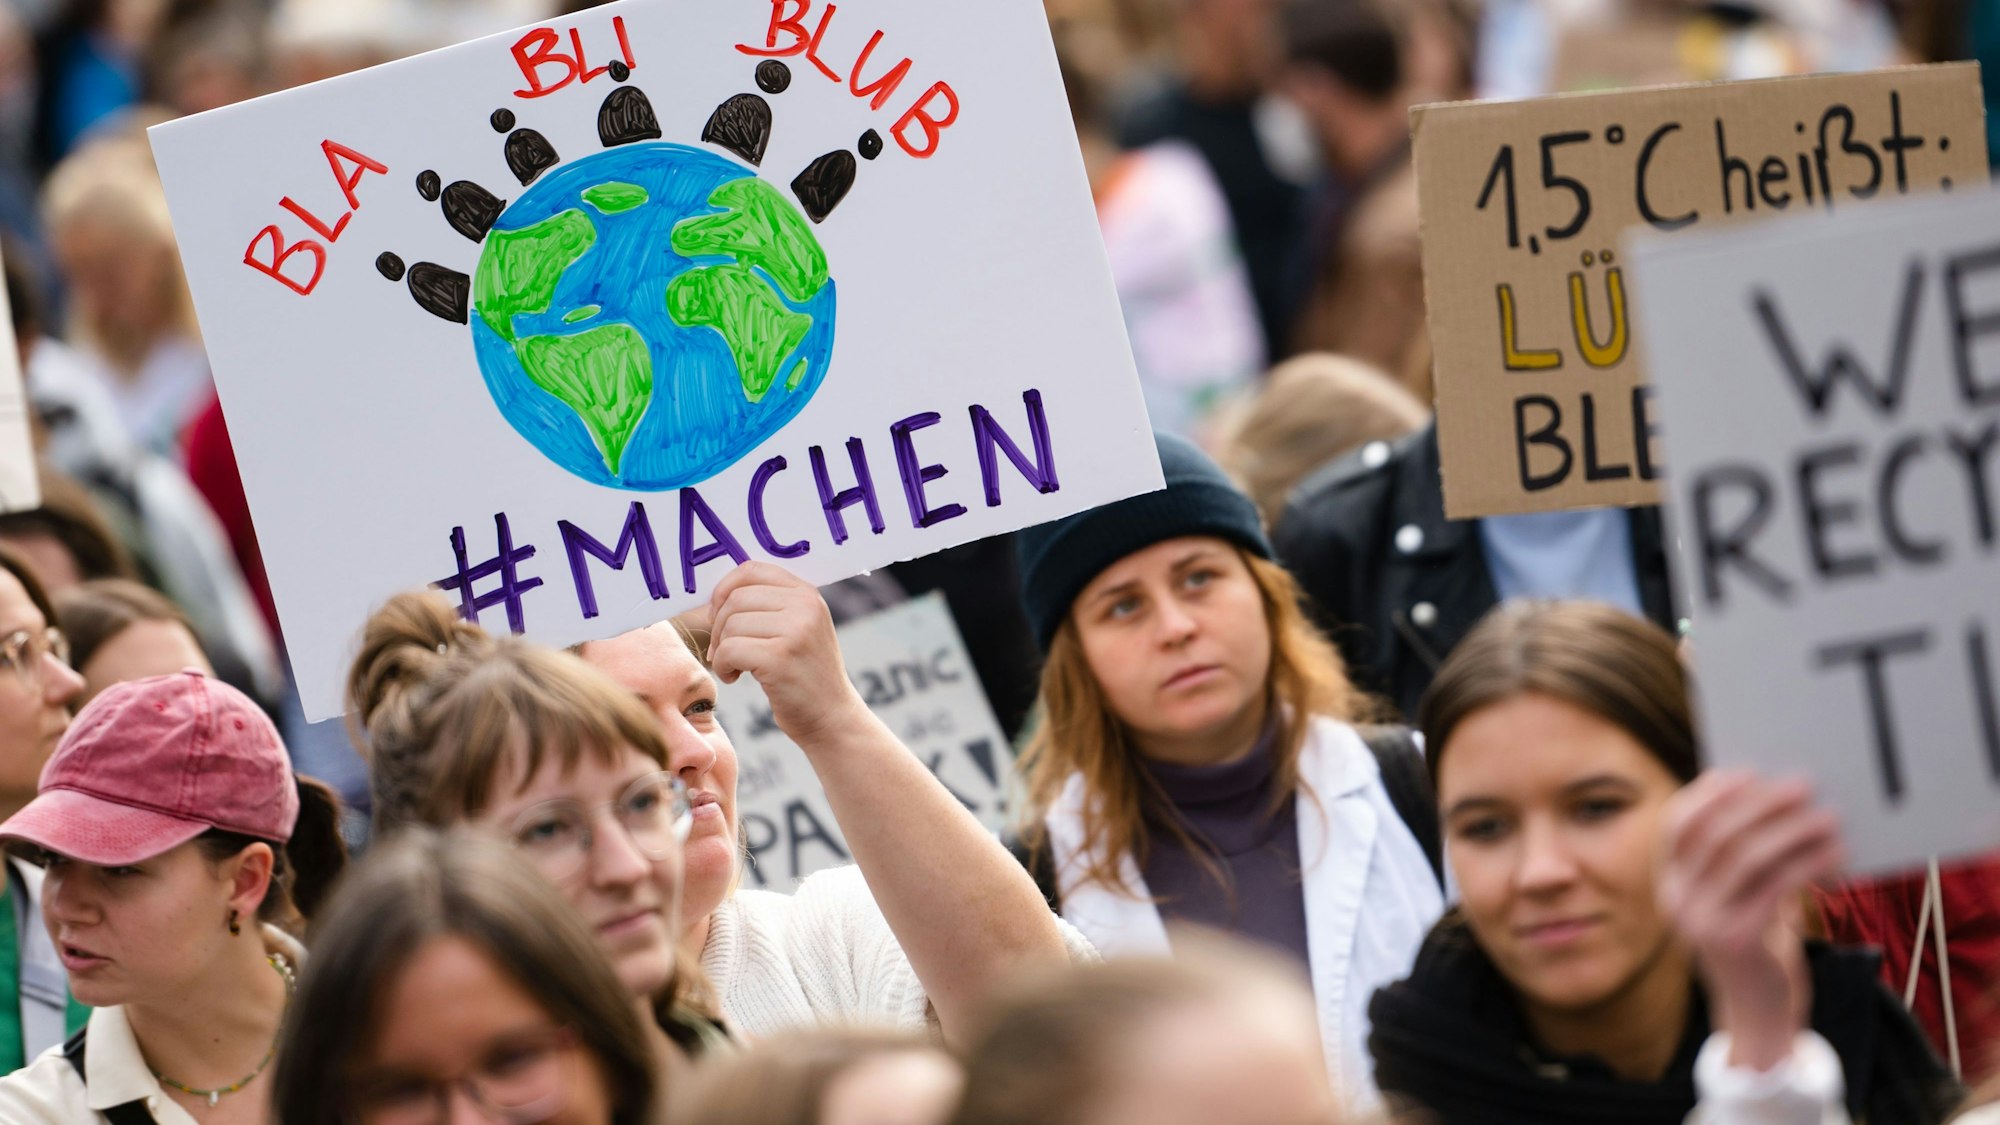 Demonstranten mit Plakaten ziehen beim Klimastreik durch Köln. Die Klimaschutzbewegung Fridays for Future hatte für diesen Freitag zu einem weltweiten Klimastreik aufgerufen.